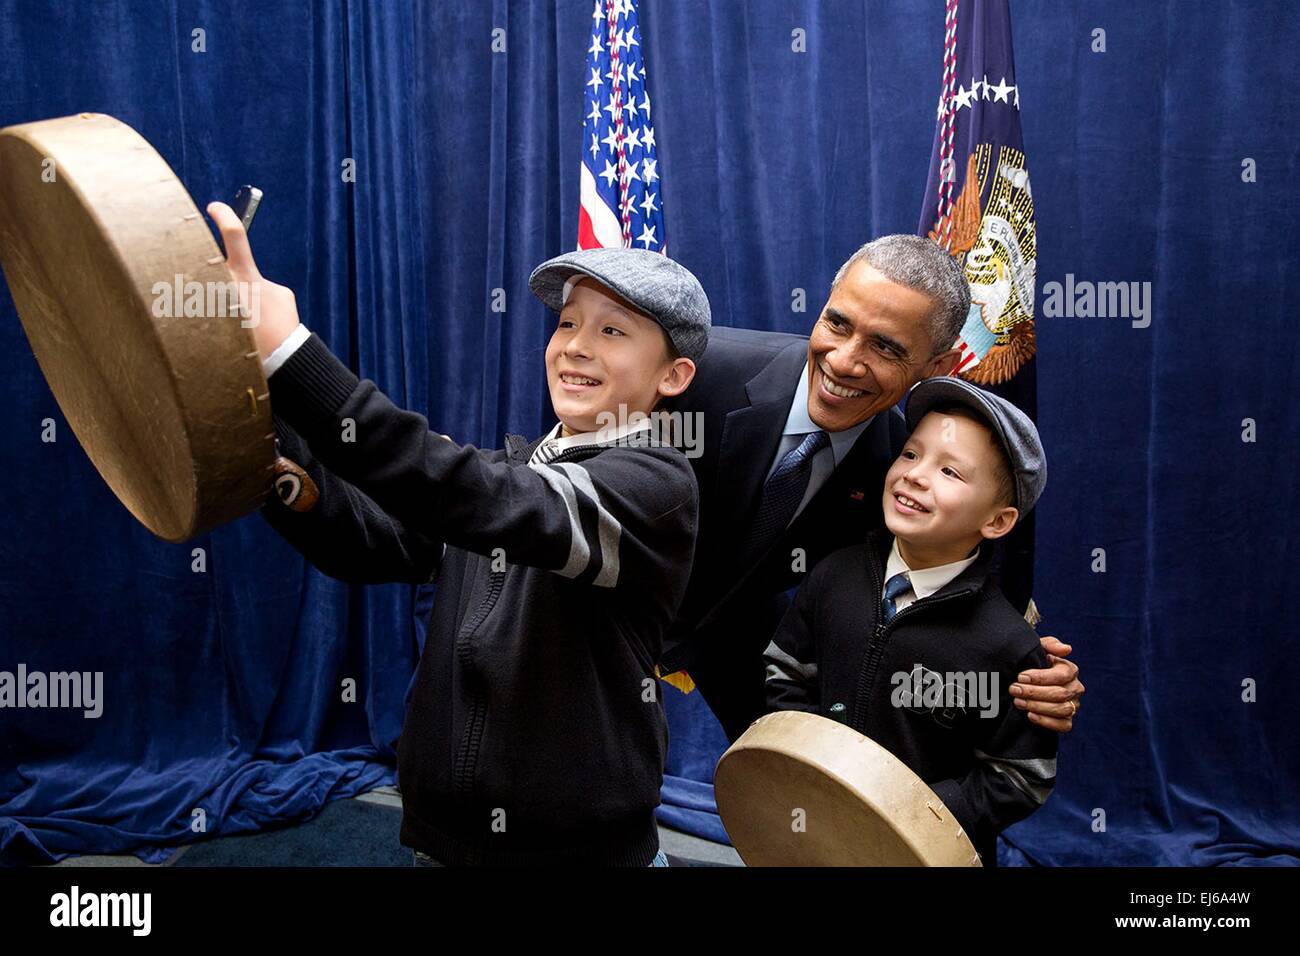 Le président américain Barack Obama pose pour une photo avec des enfants à la suite de son allocution à la Maison Blanche 3 Décembre Conférence nations tribales, 2014 à Washington, D.C. Banque D'Images